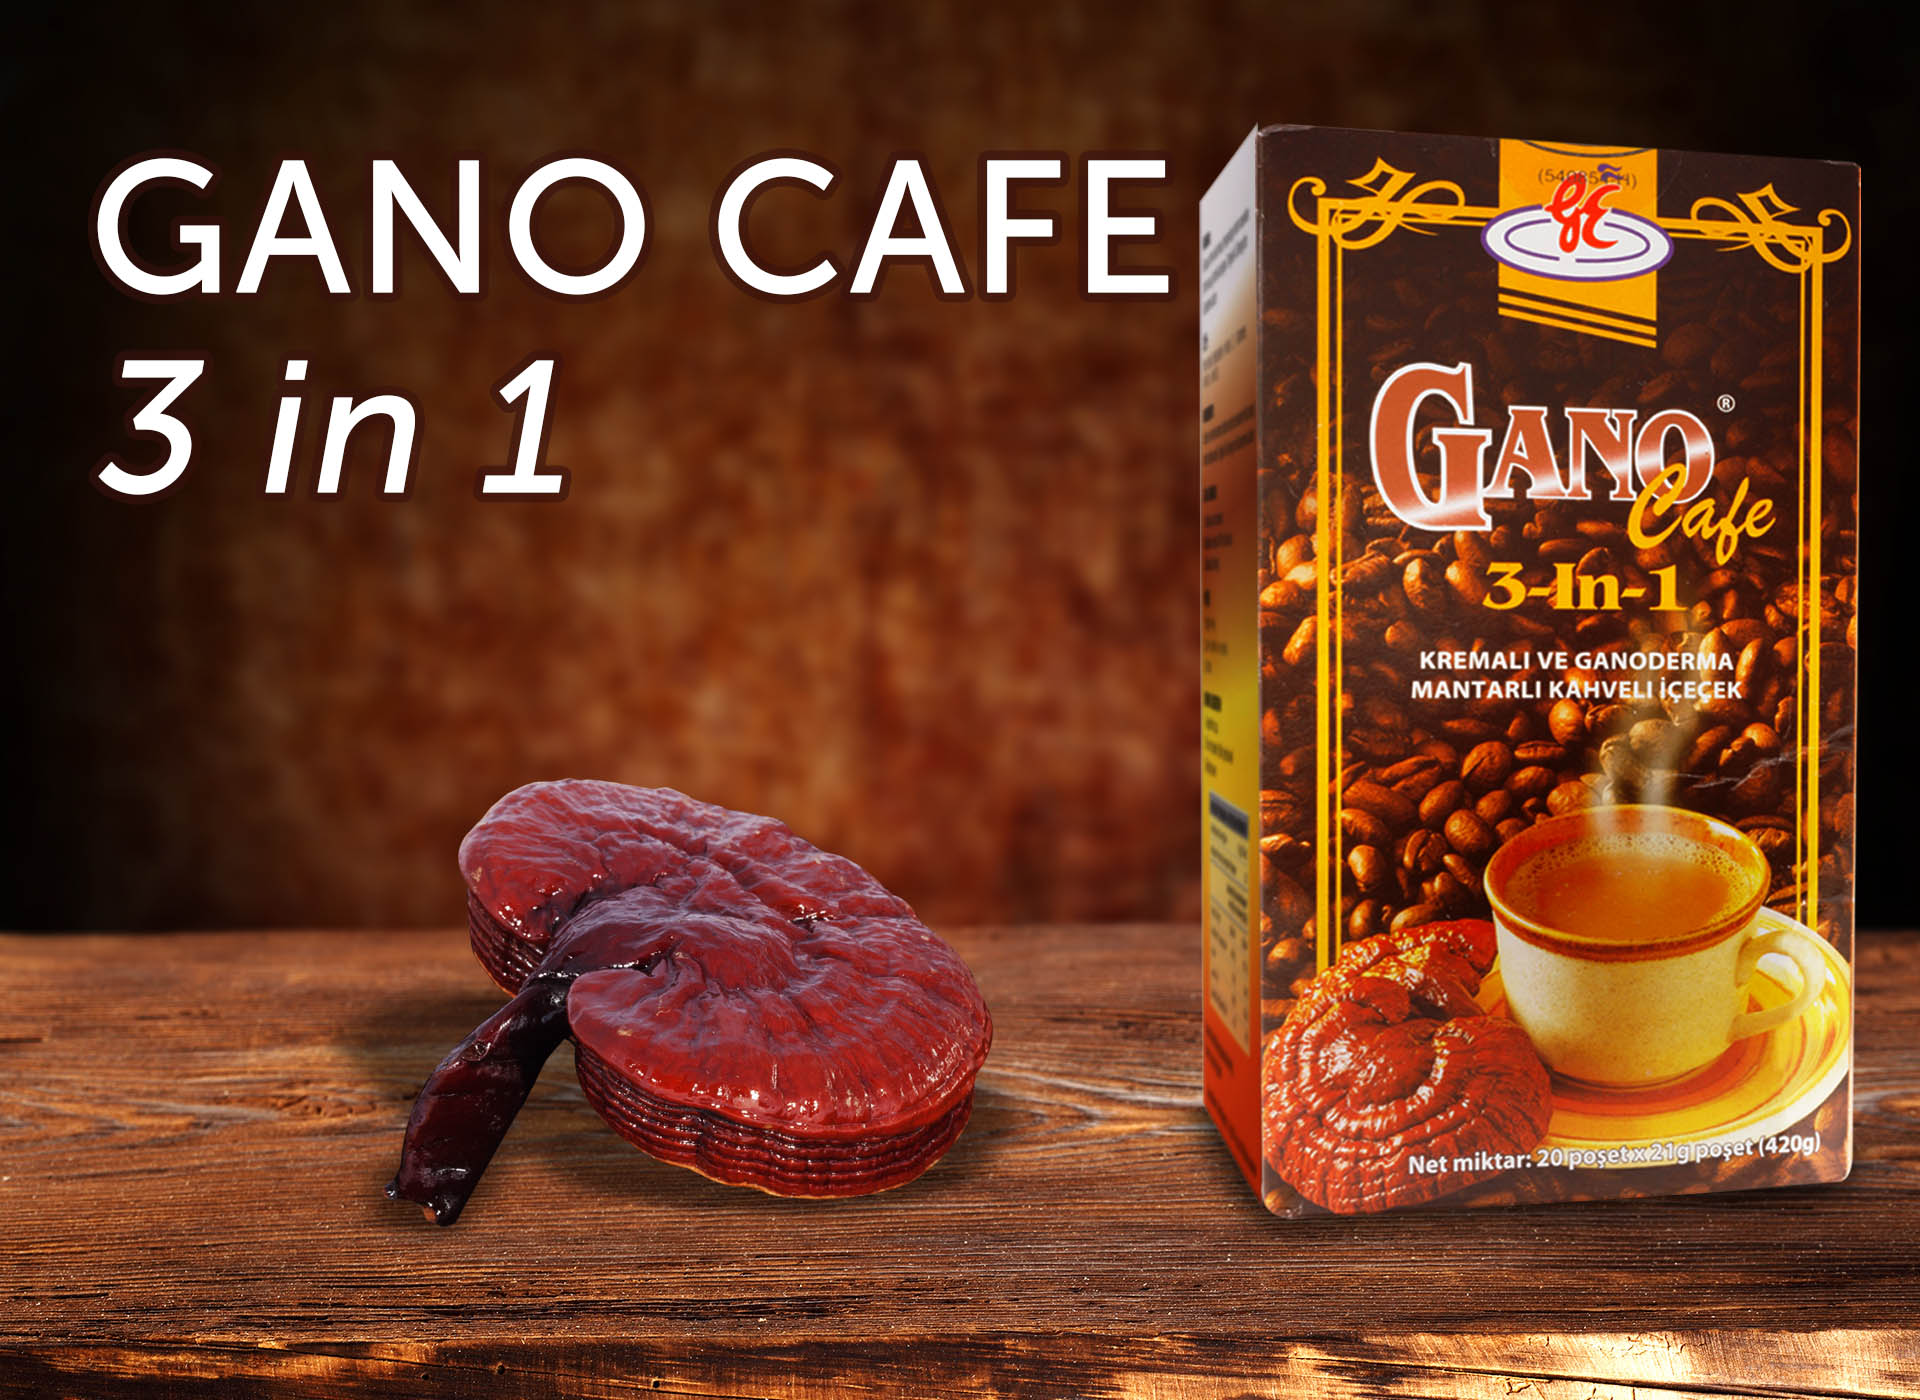 GANO CAFE 3 IN 1 - üçü bir arada